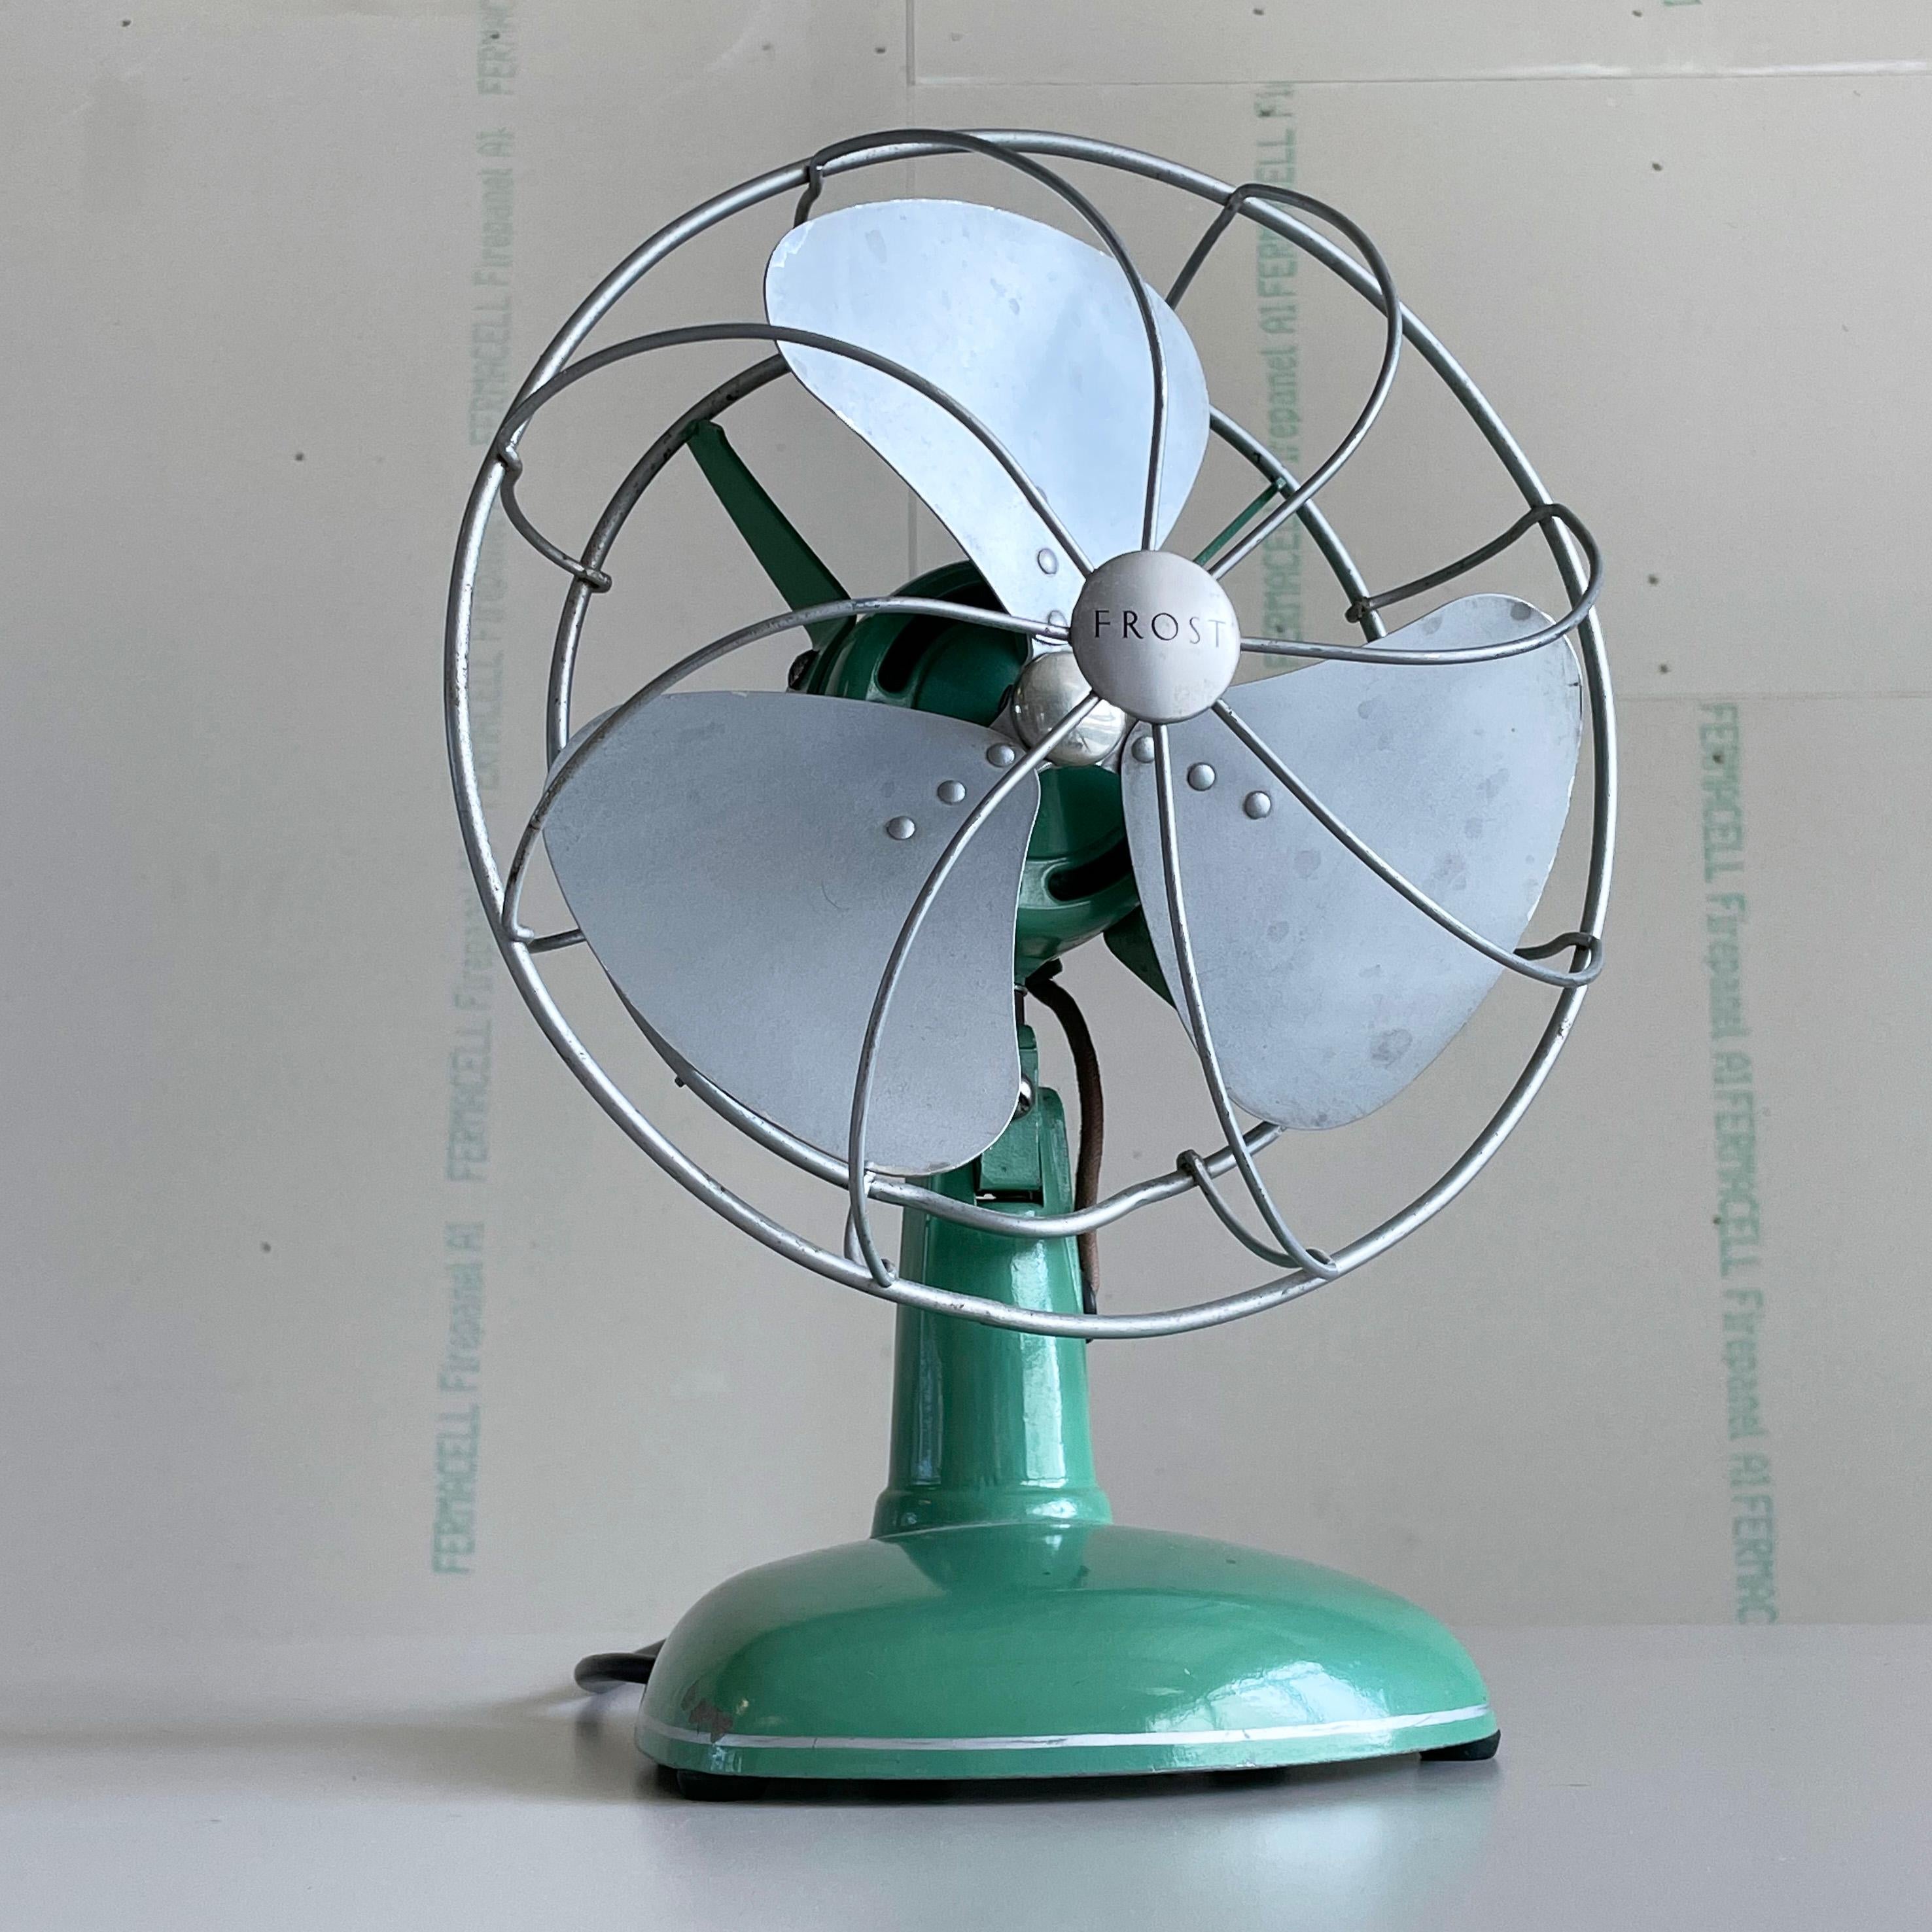 1950’s FROST triple blade oscillating desk fan / ventilator For Sale 2